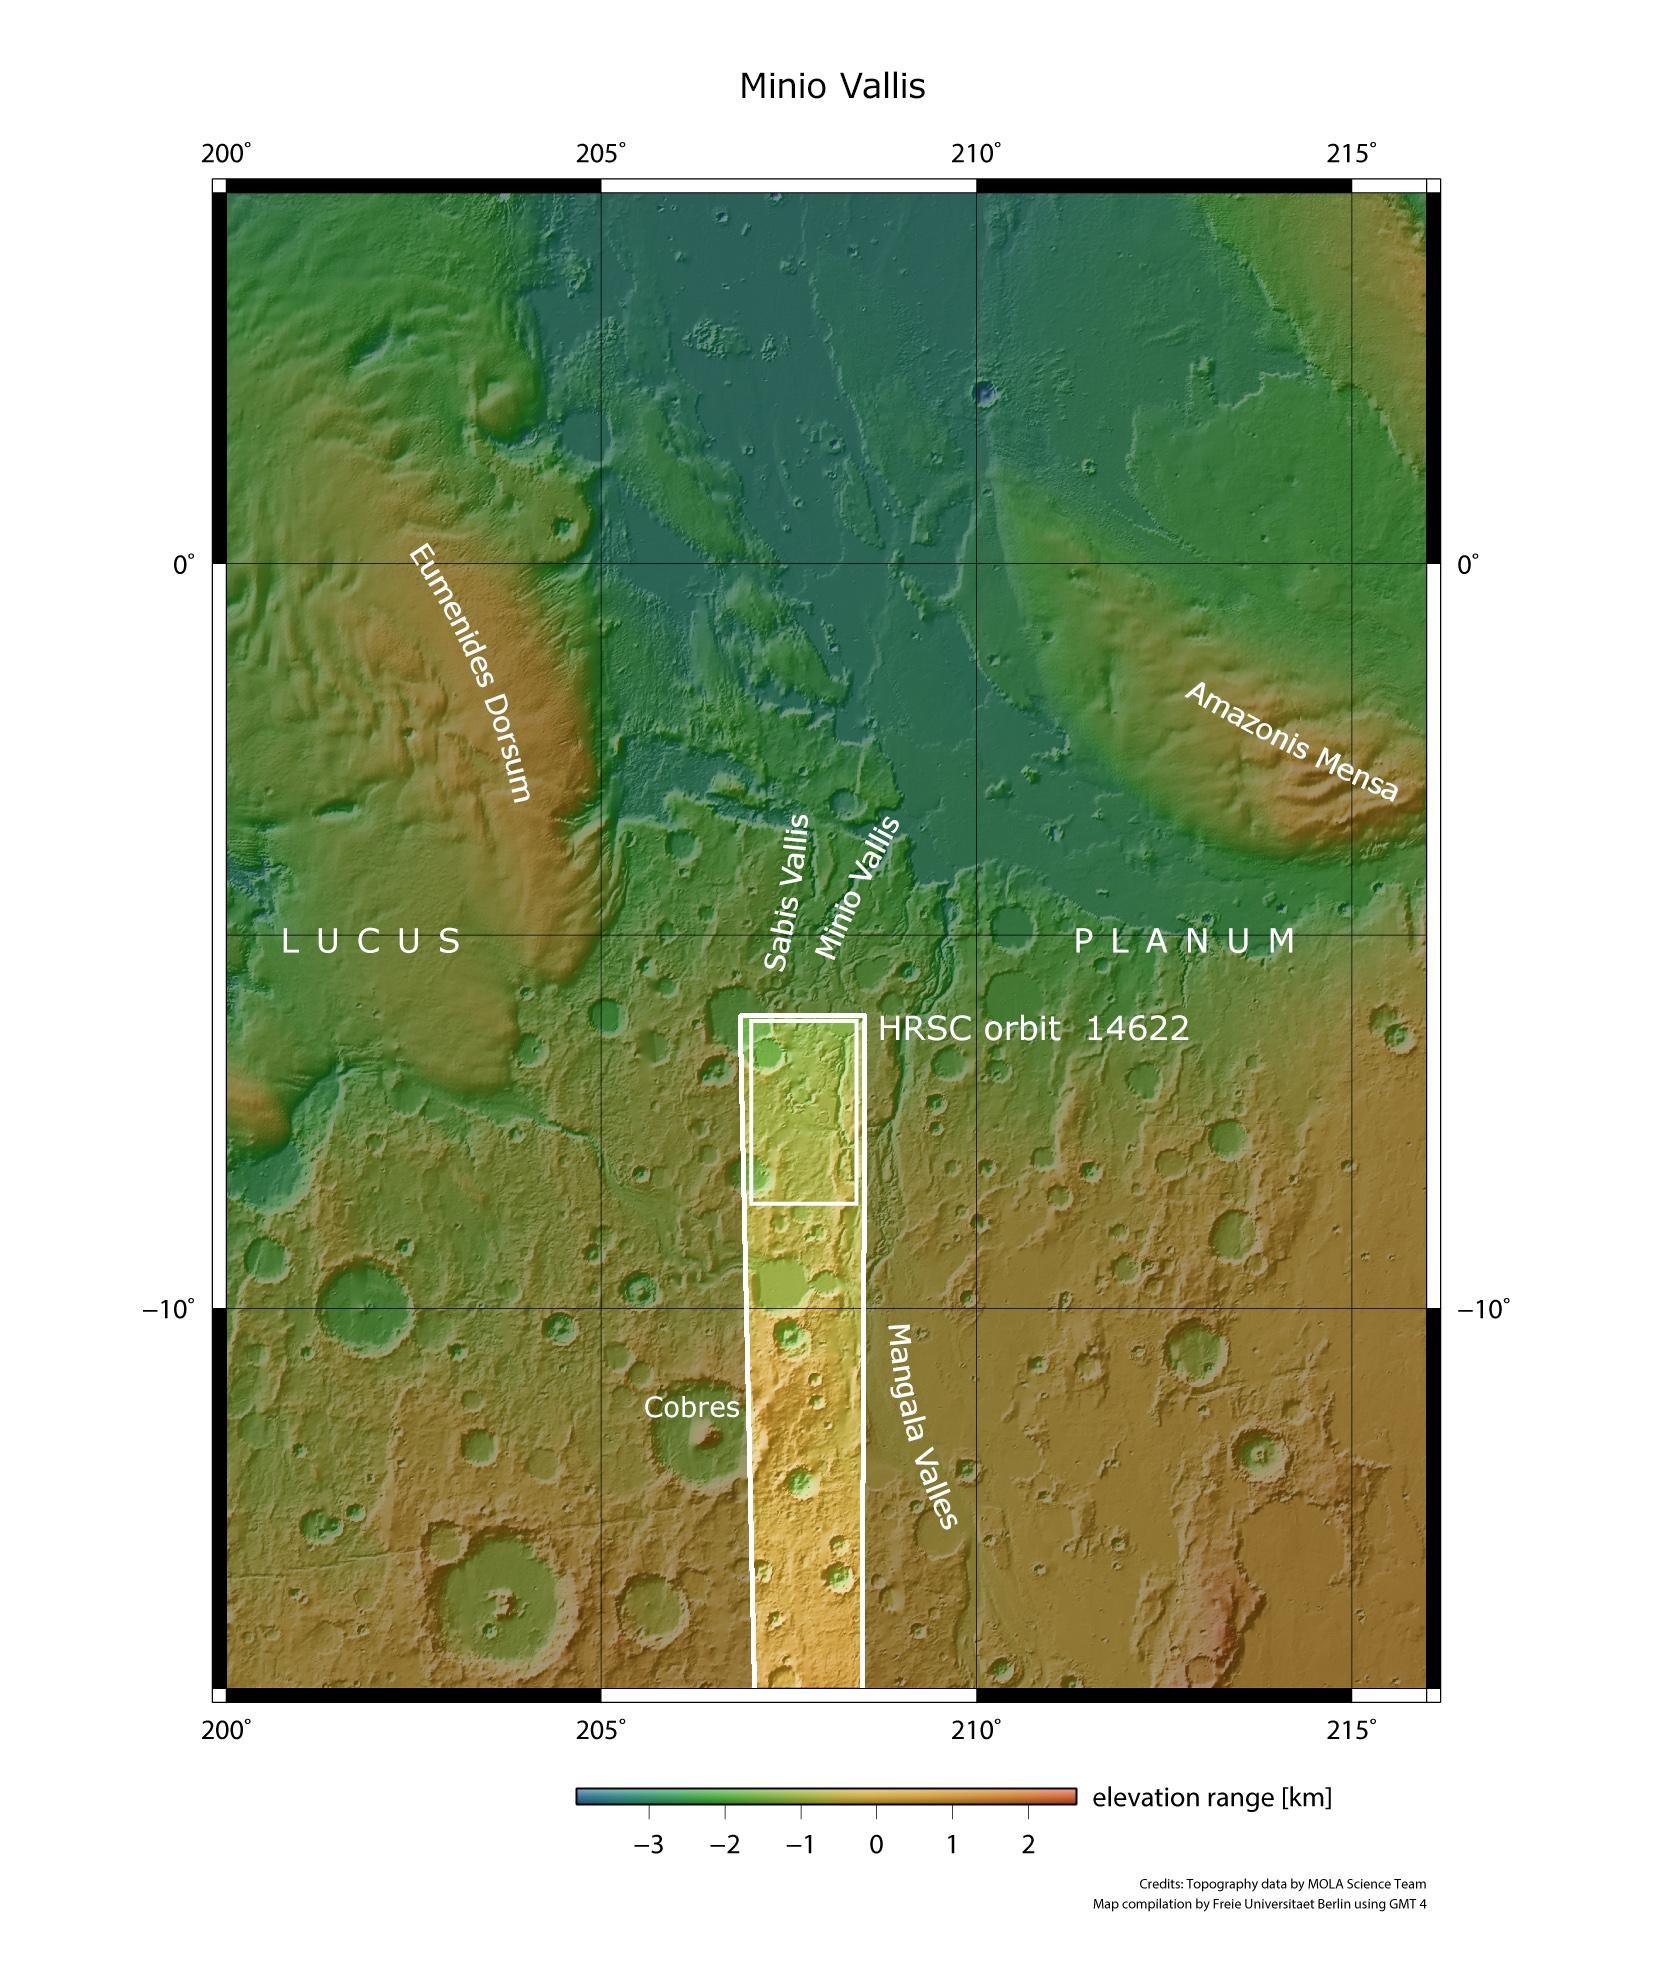 Regionale Übersichtskarte der Region Mangala Valles und Minio Vallis